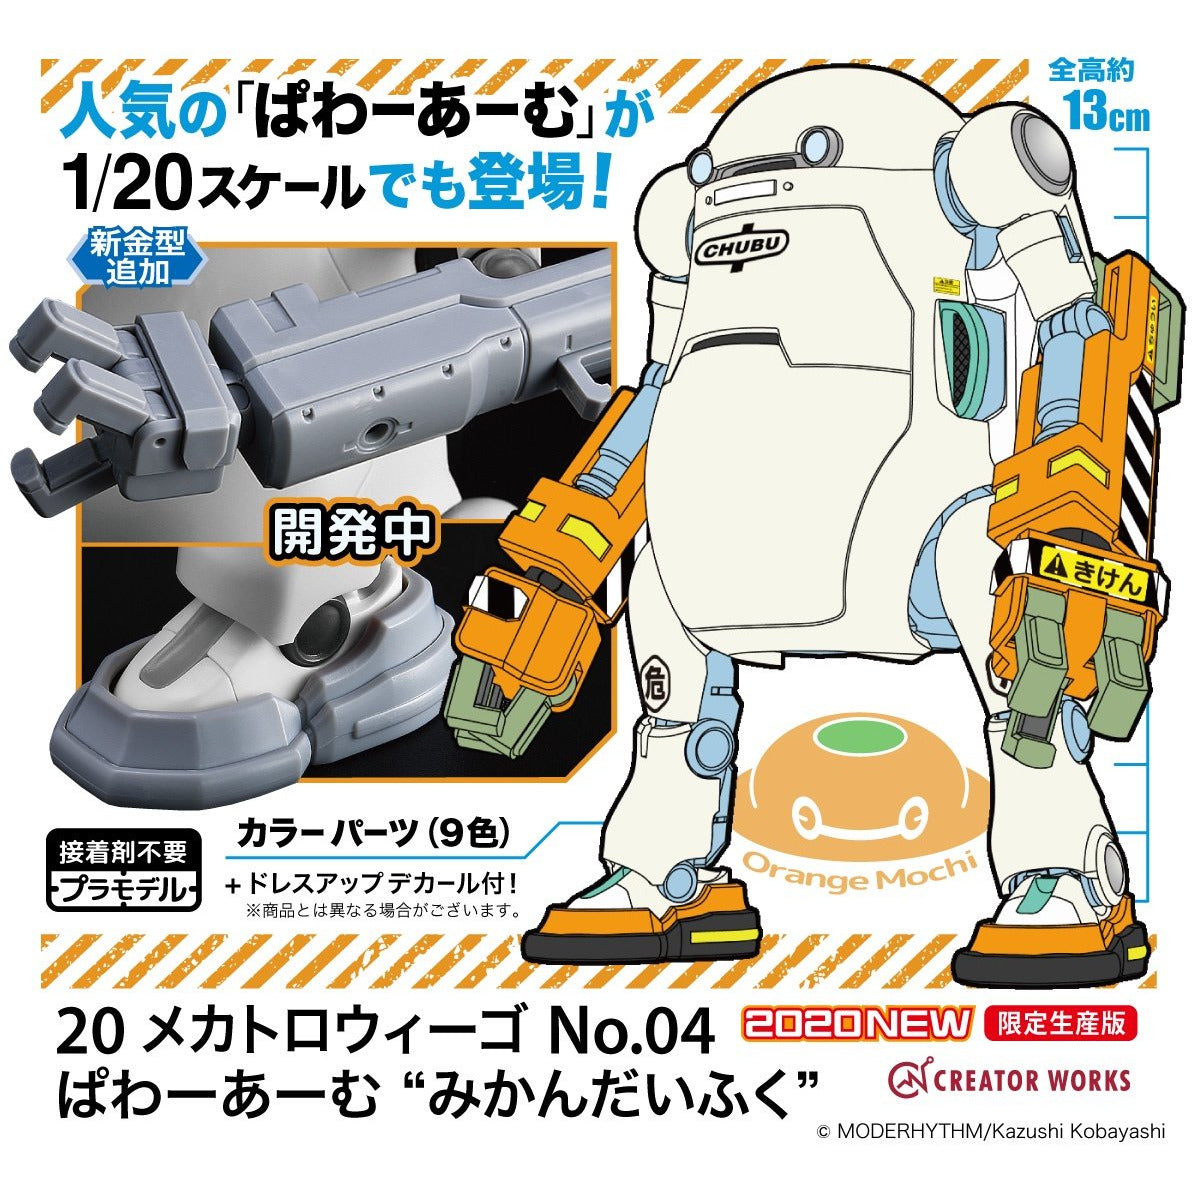 MechatroWeGo No.04 Power Arm "Orange Mochi" 1/20 by Hasegawa